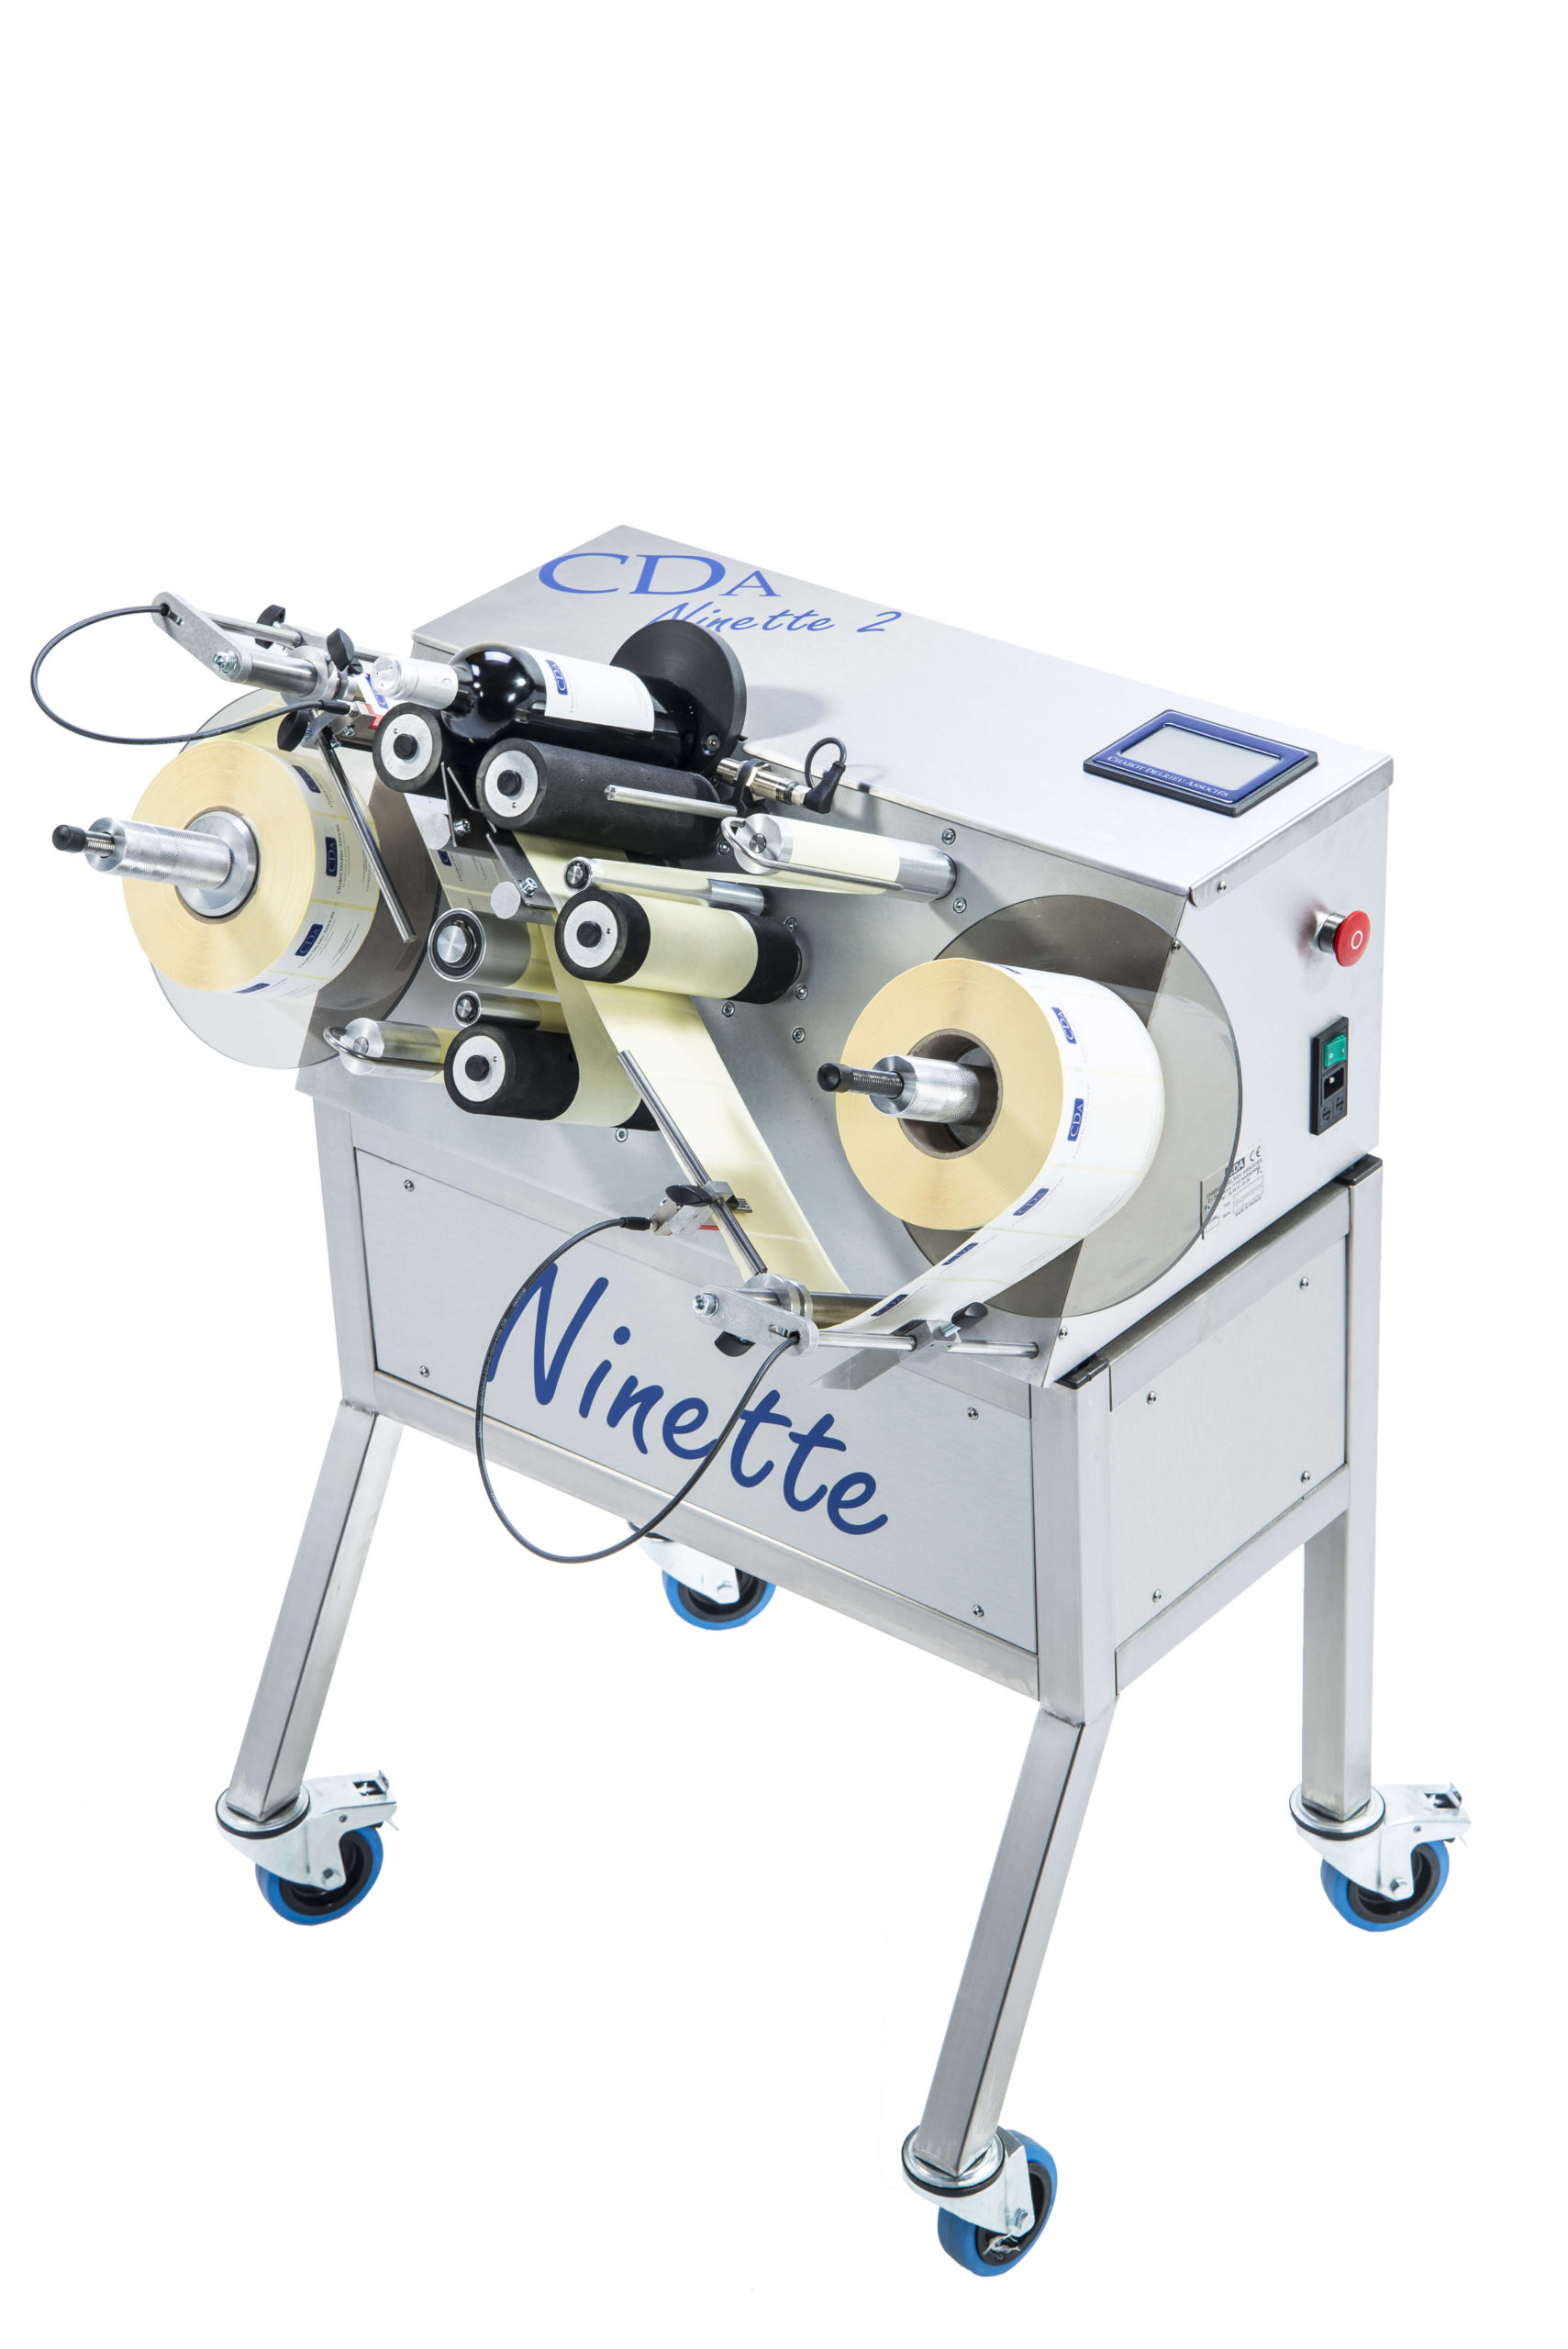 Ninette 2 – Etikettmaskin til sylindriske produkter